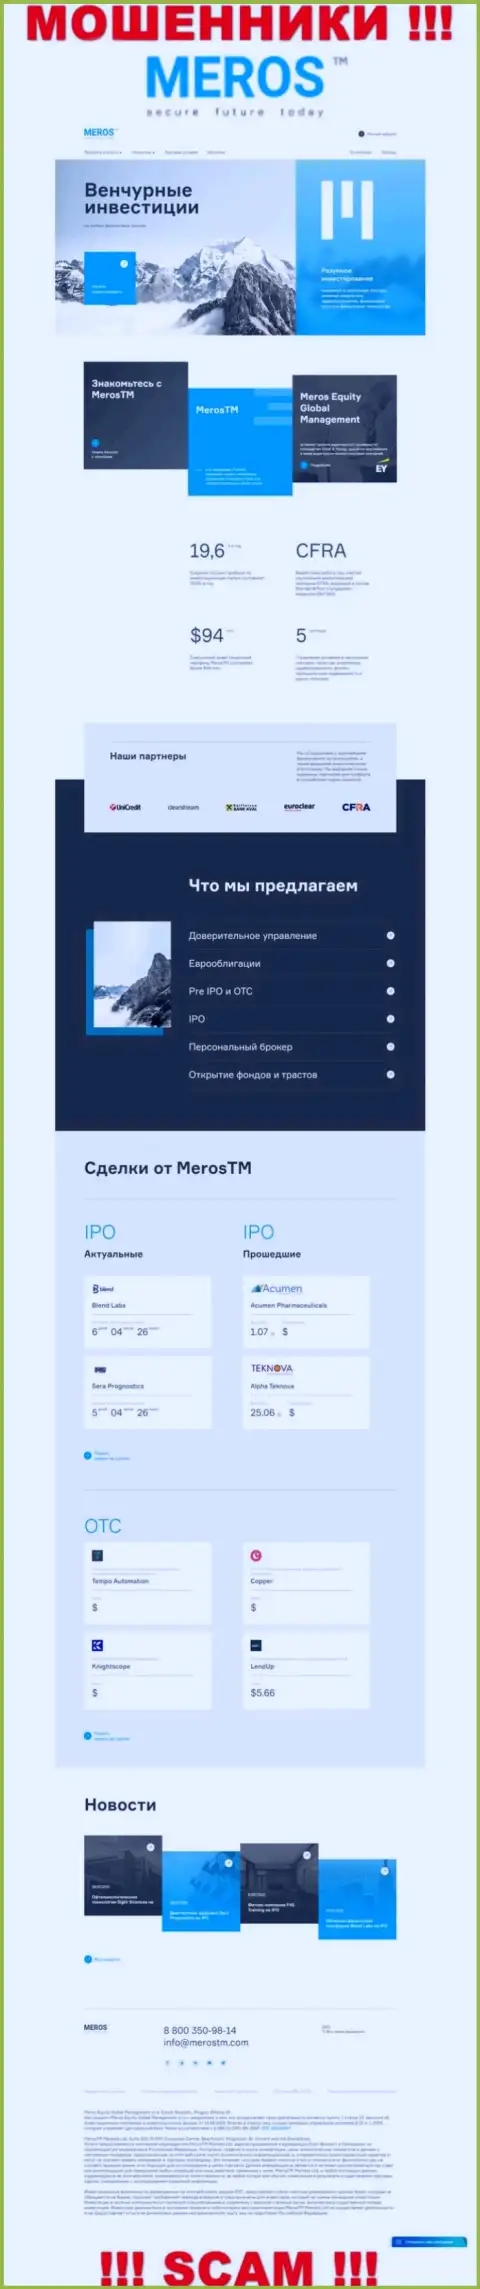 Разбор официального web-ресурса шулеров MerosMT Markets LLC